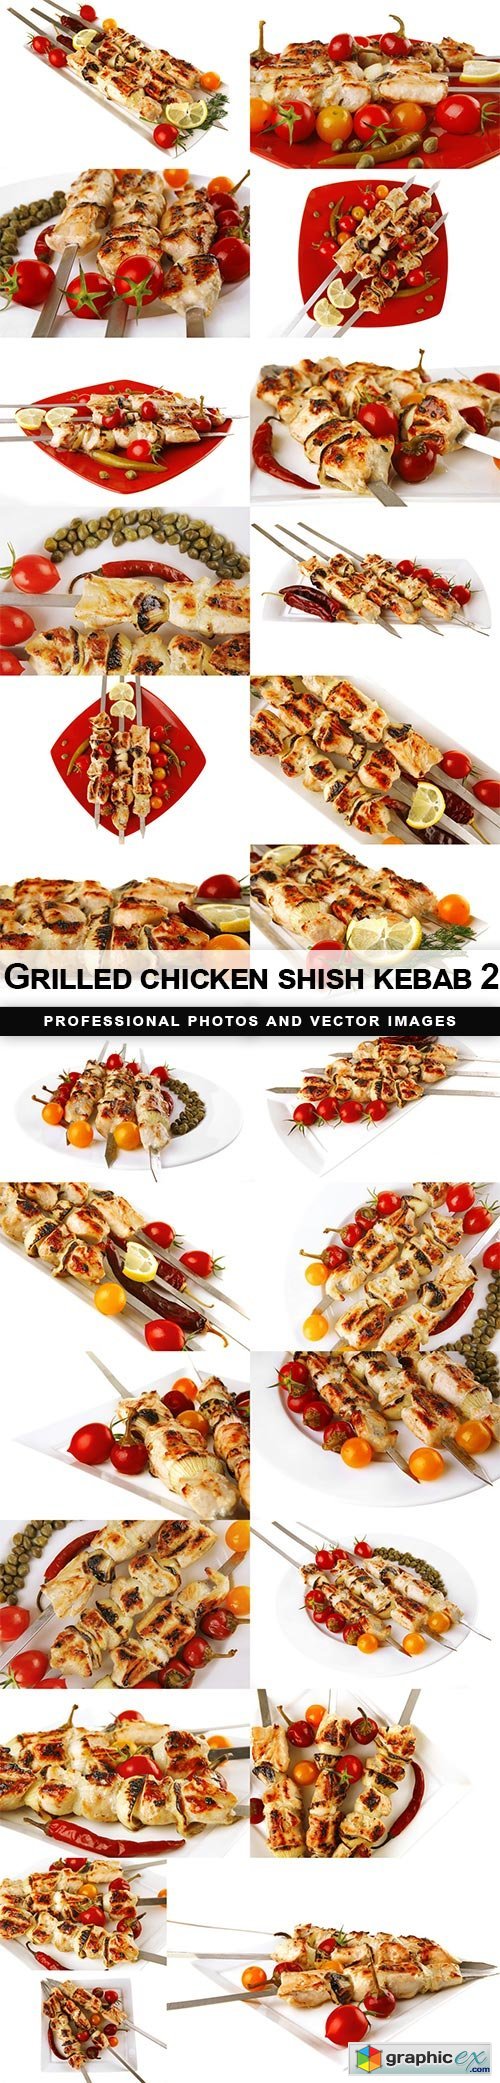 Grilled chicken shish kebab 2